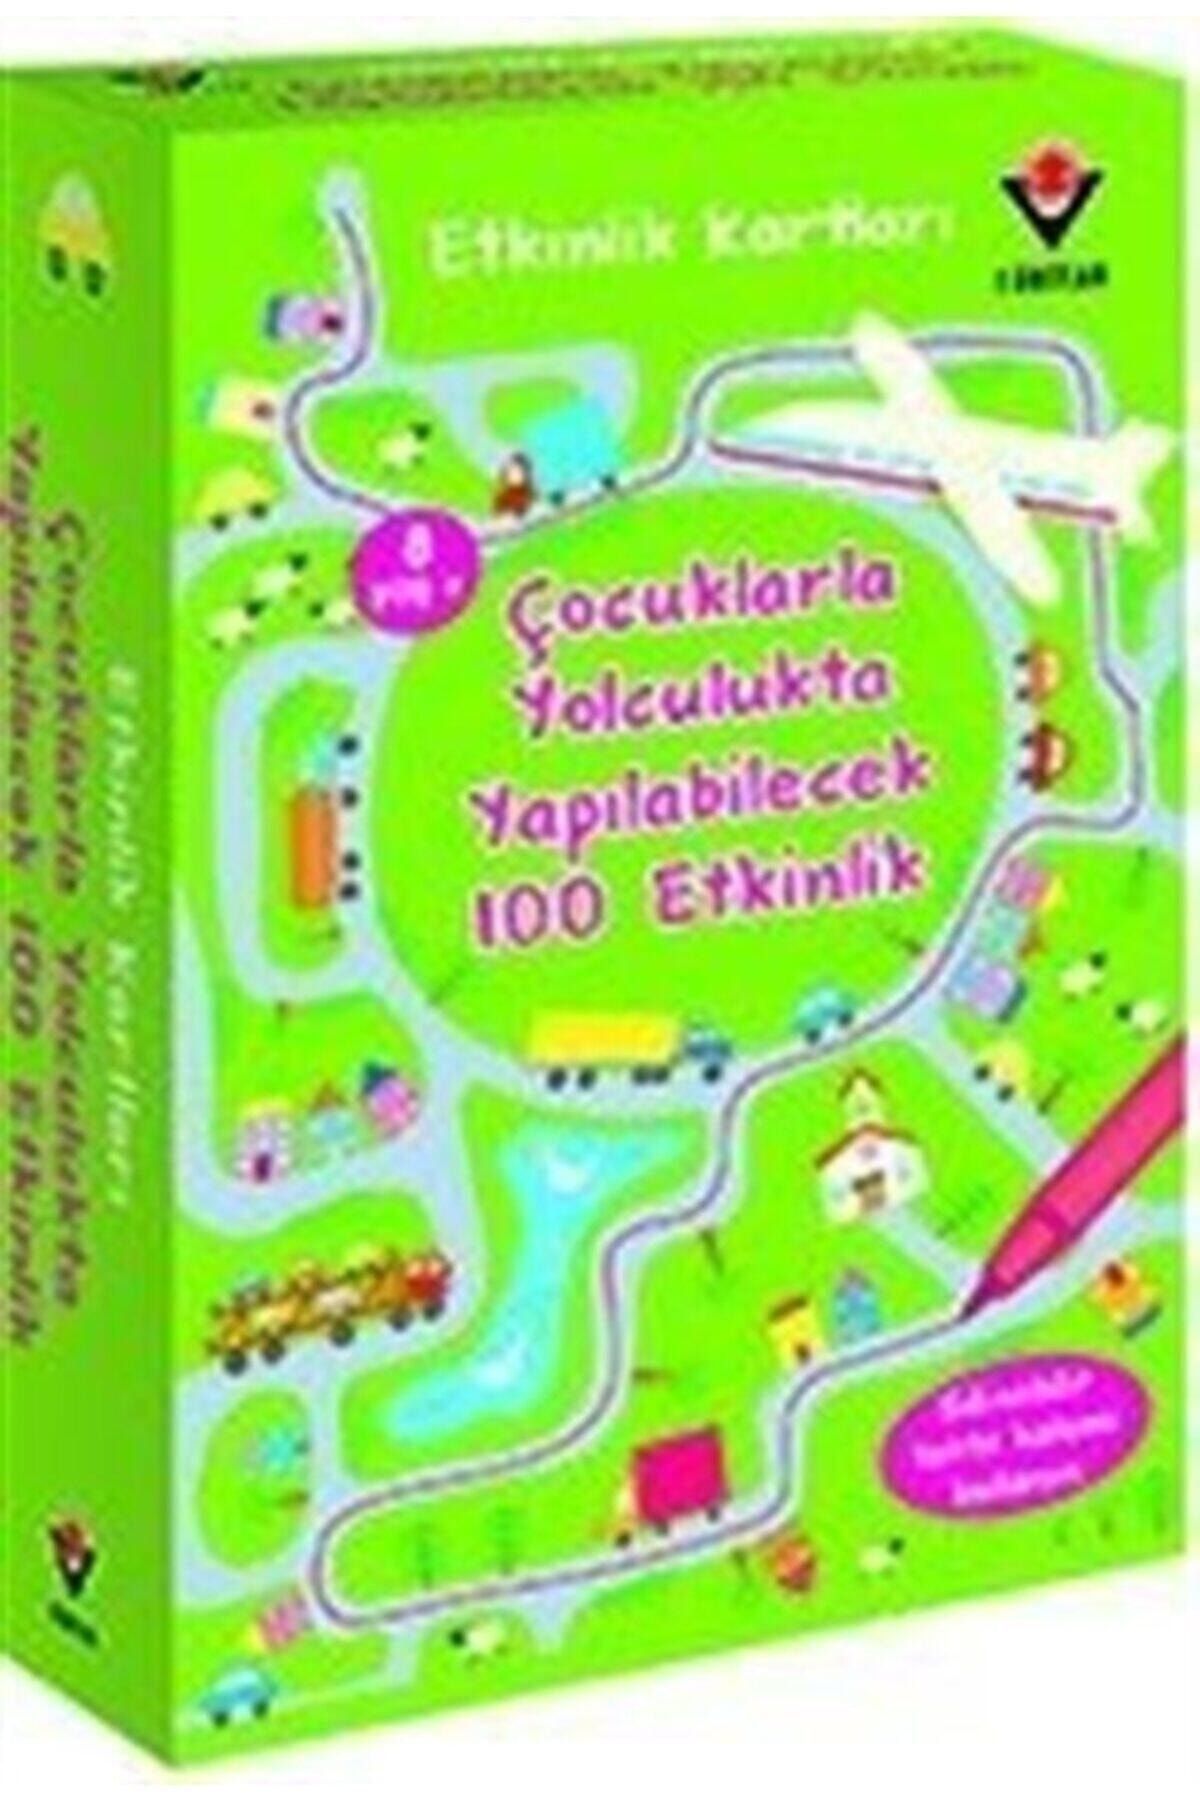 Tübitak Yayınları Çocuklarla Yolculukta Yapılabilecek 100 Etkinlik / Etkinlik Kartları - Non Figg